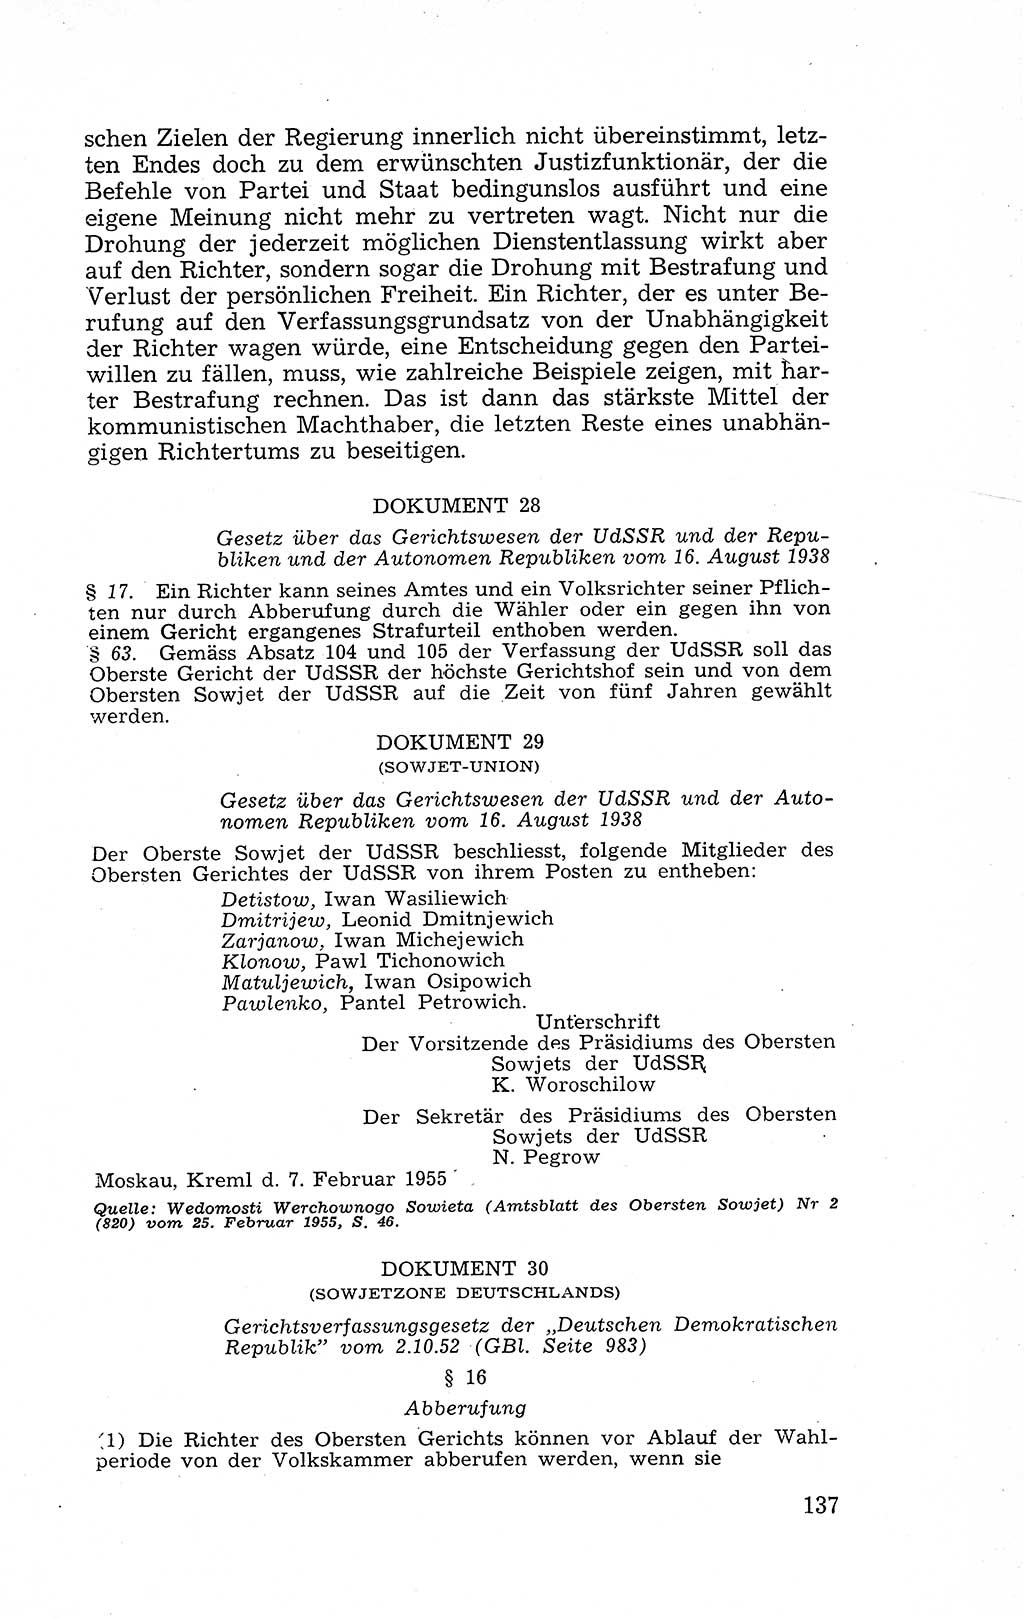 Recht in Fesseln, Dokumente, Internationale Juristen-Kommission [Bundesrepublik Deutschland (BRD)] 1955, Seite 137 (R. Dok. IJK BRD 1955, S. 137)